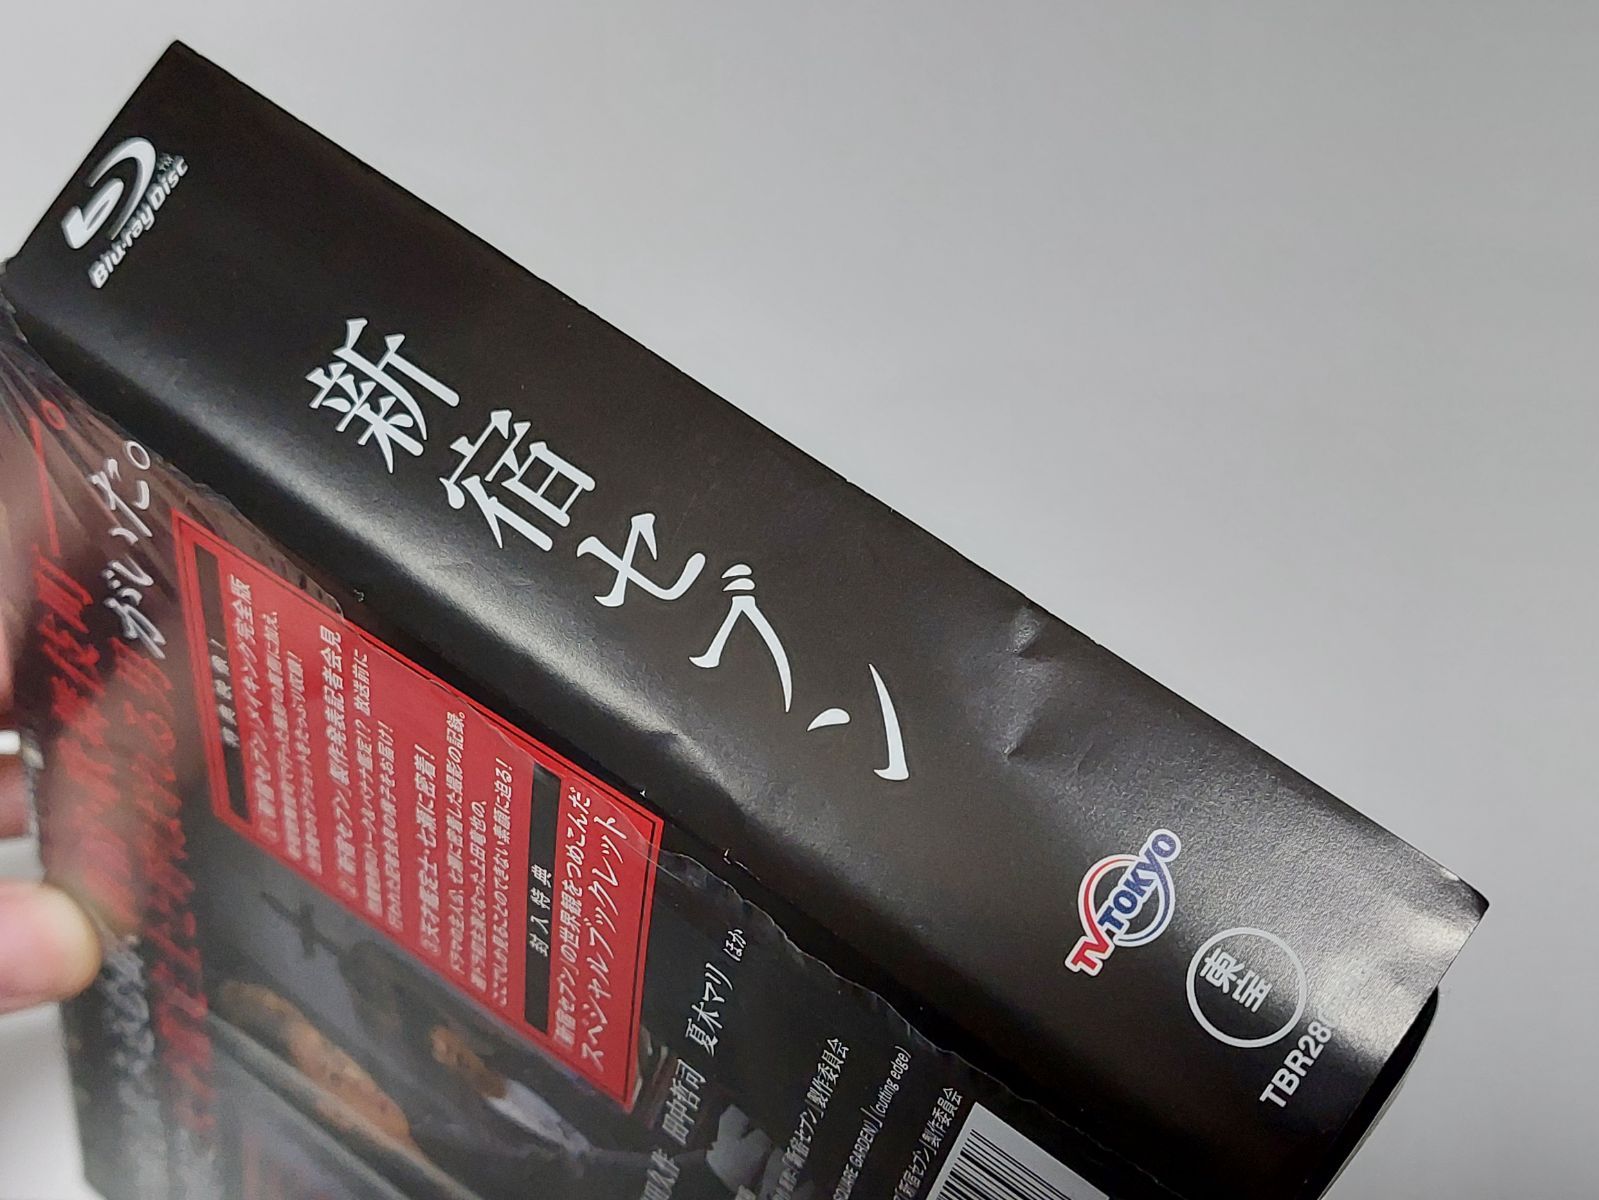 新宿セブン Blu-ray BOX〈4枚組〉」KAT-TUN 上田竜也 - メルカリ